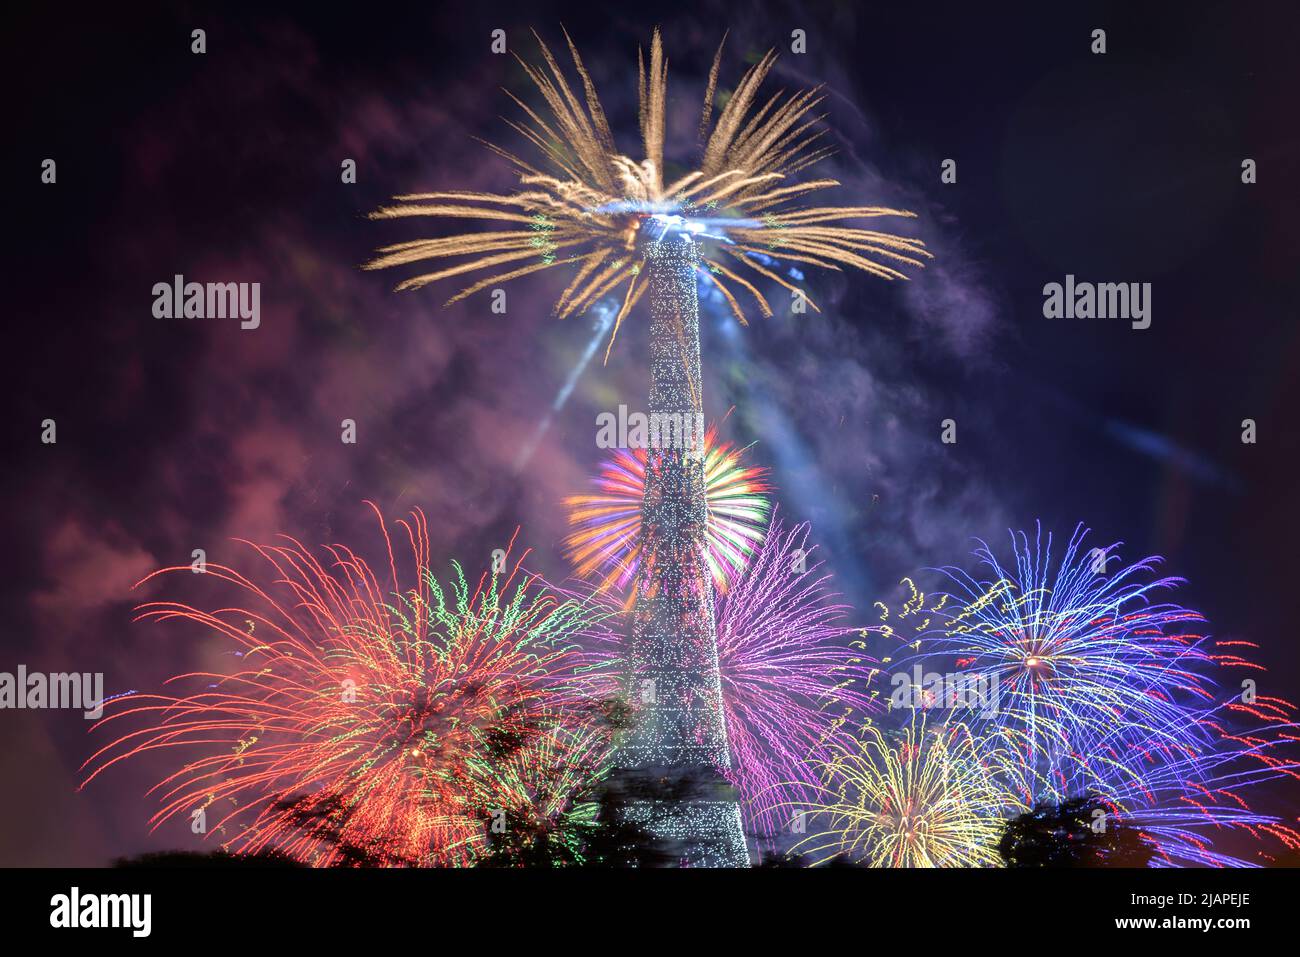 Feux d'artifice à la Tour Eiffel, photographiés d'un point de vue en face du ƒcole militaire. Feux d'artifice de Paris, France. Usage éditorial uniquement Banque D'Images